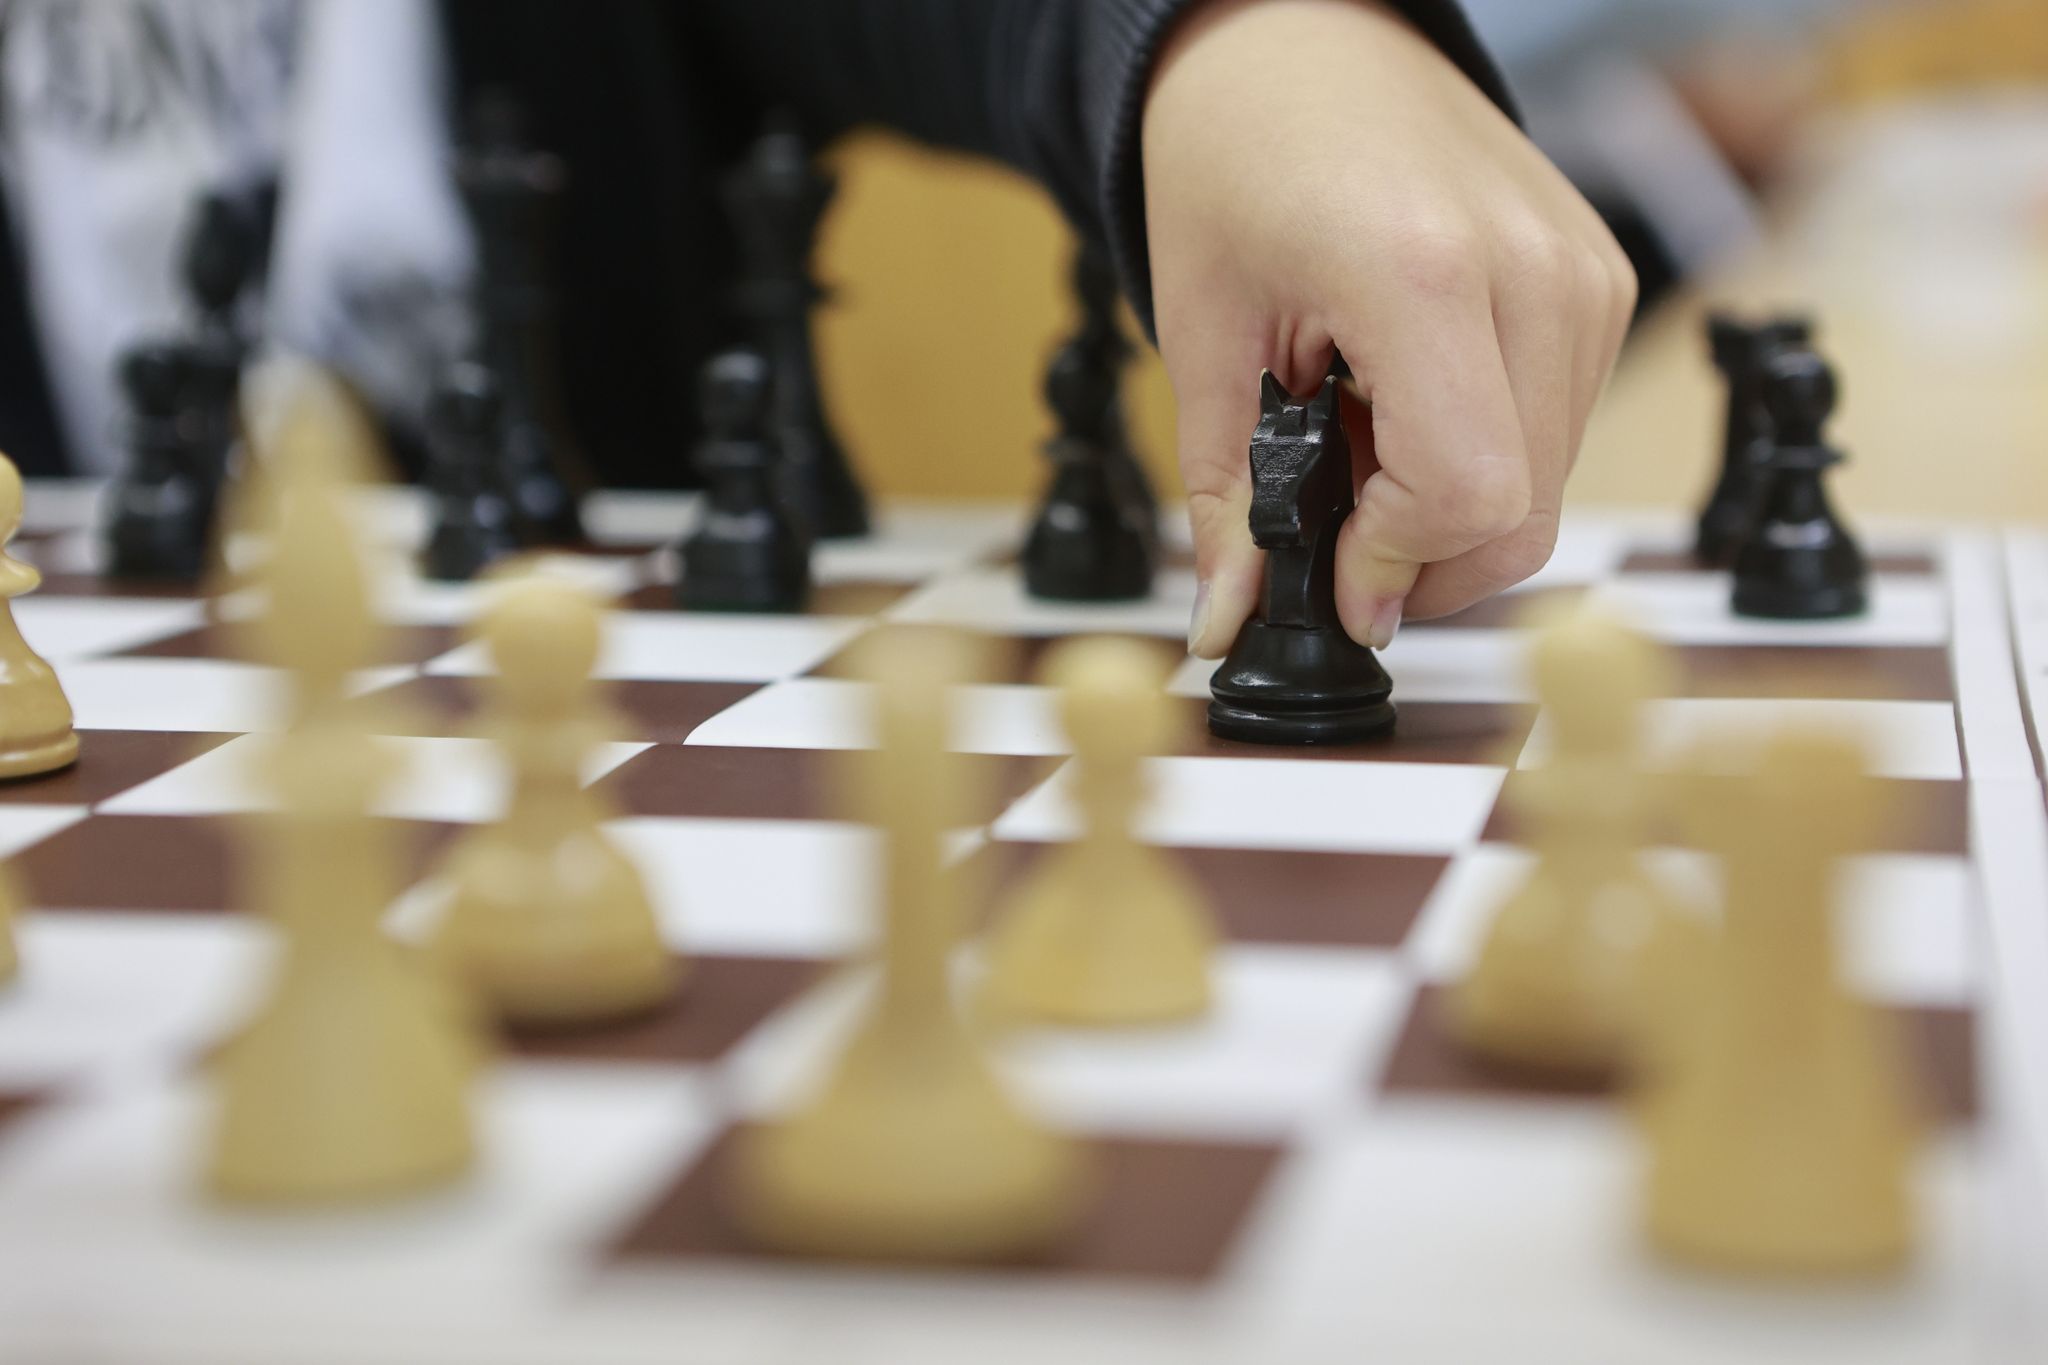 Frauen sind im Schach stark unterrepräsentiert. Ein offener Brief befeuert die Sexismus-Debatte.